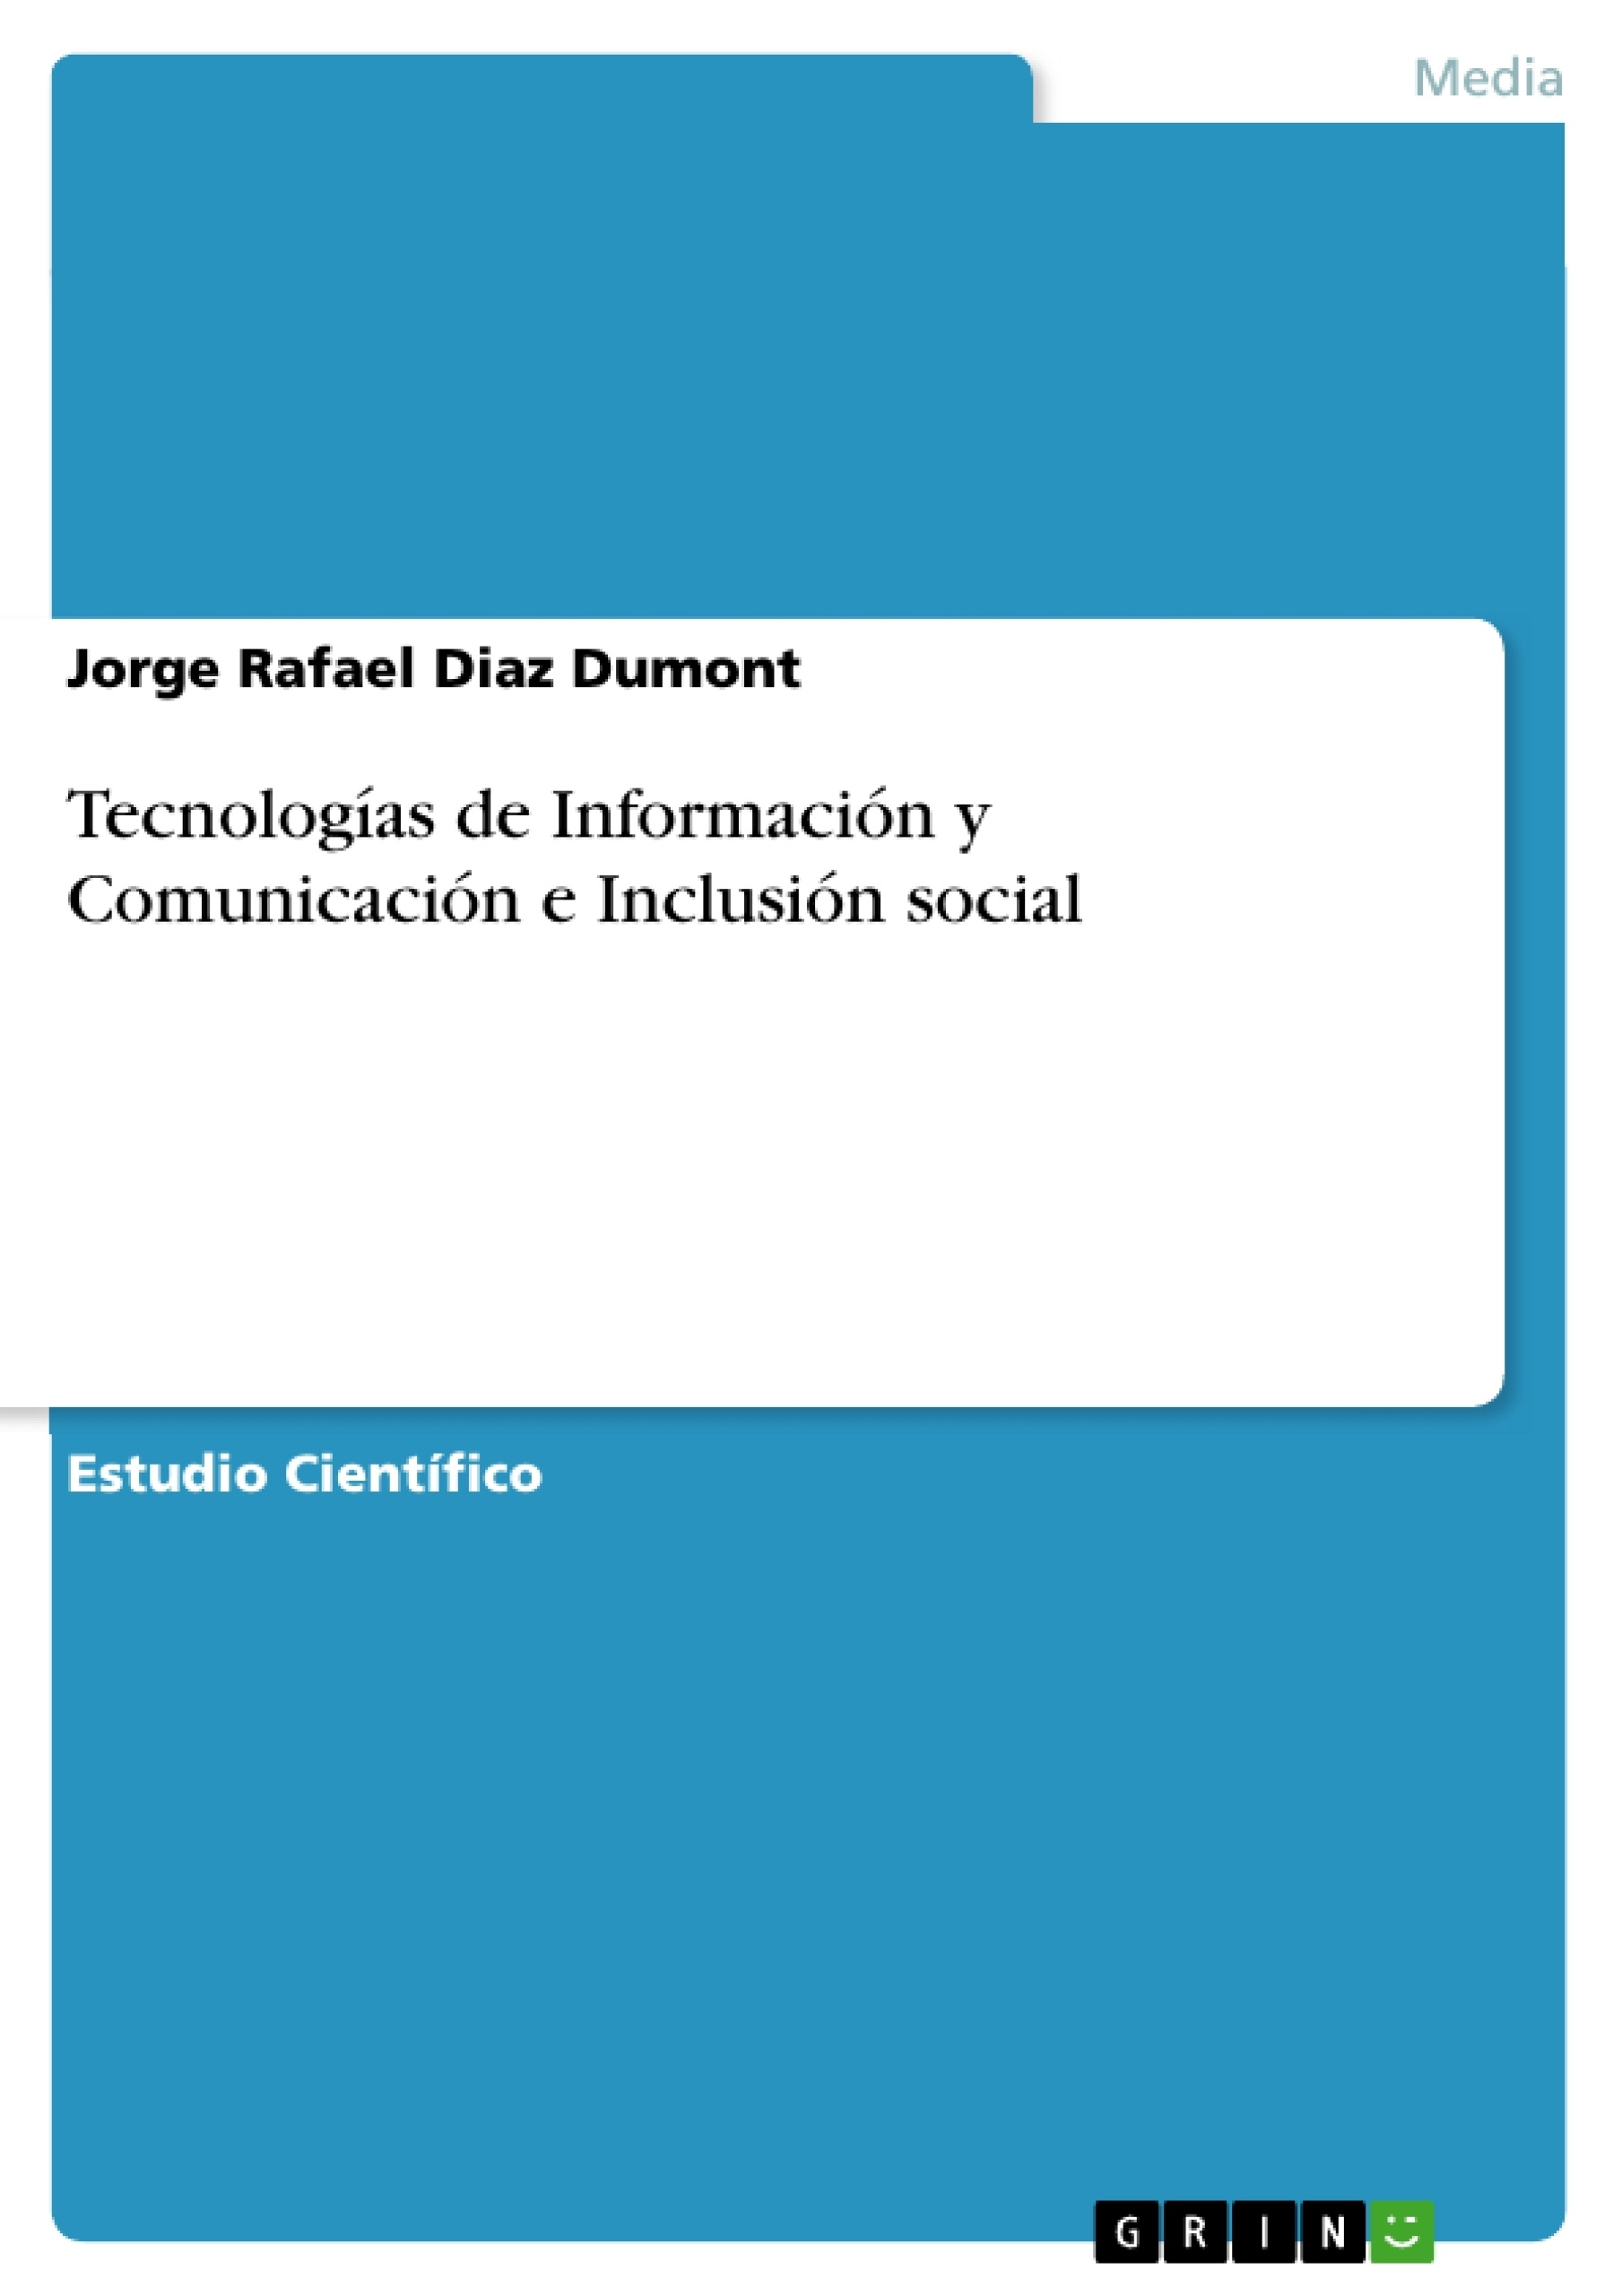 Titre: Tecnologías de Información y Comunicación e Inclusión social